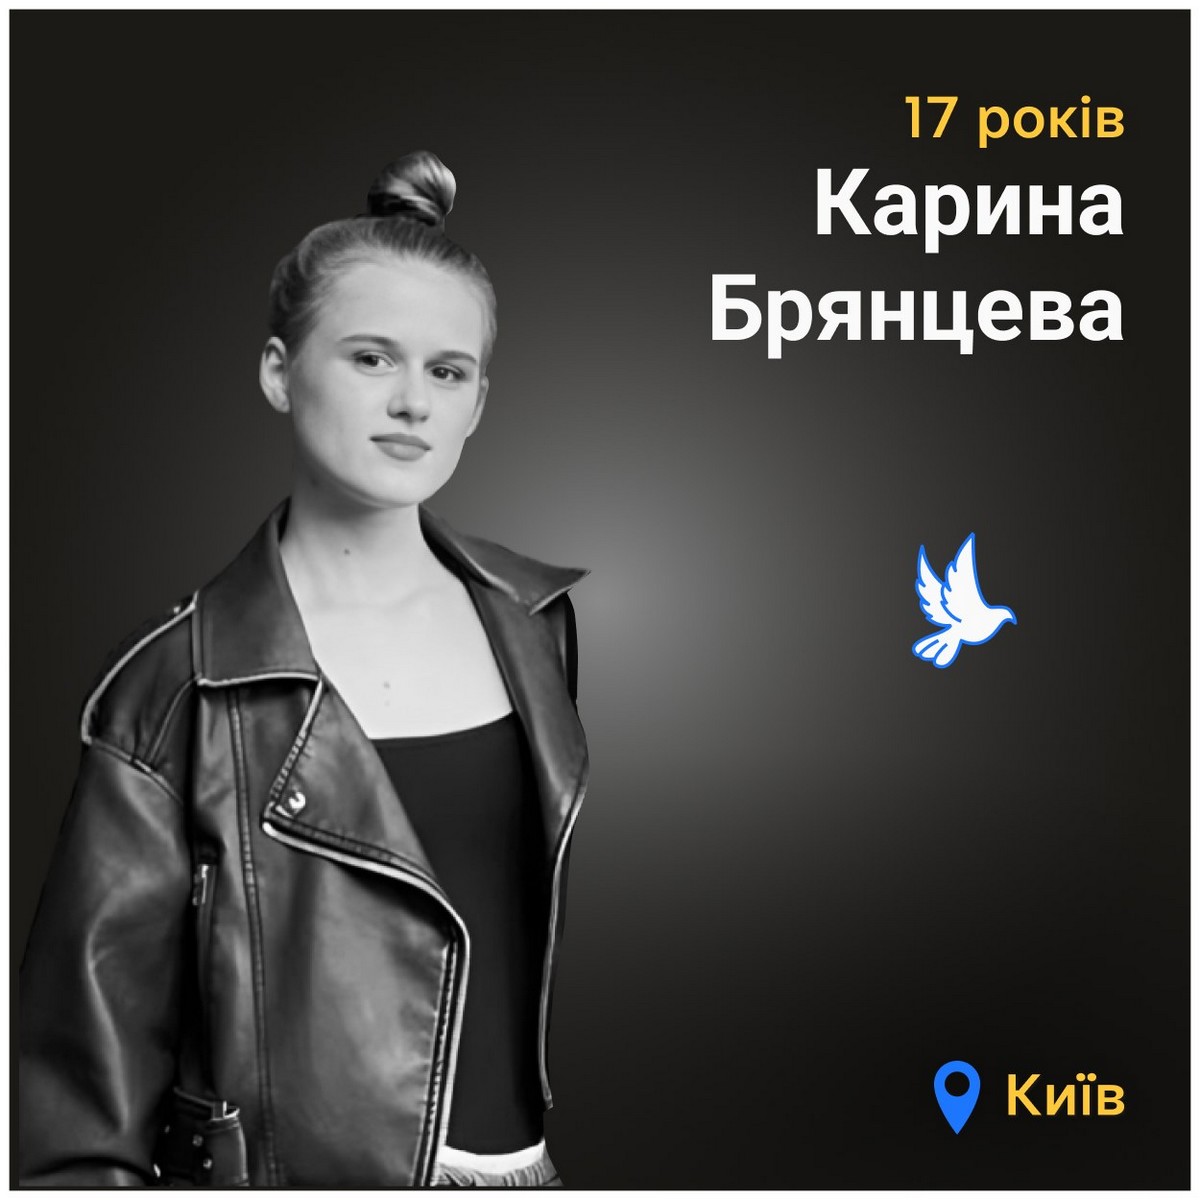 Меморіал: вбиті росією. Карина Брянцева, 17 років, Київ, липень